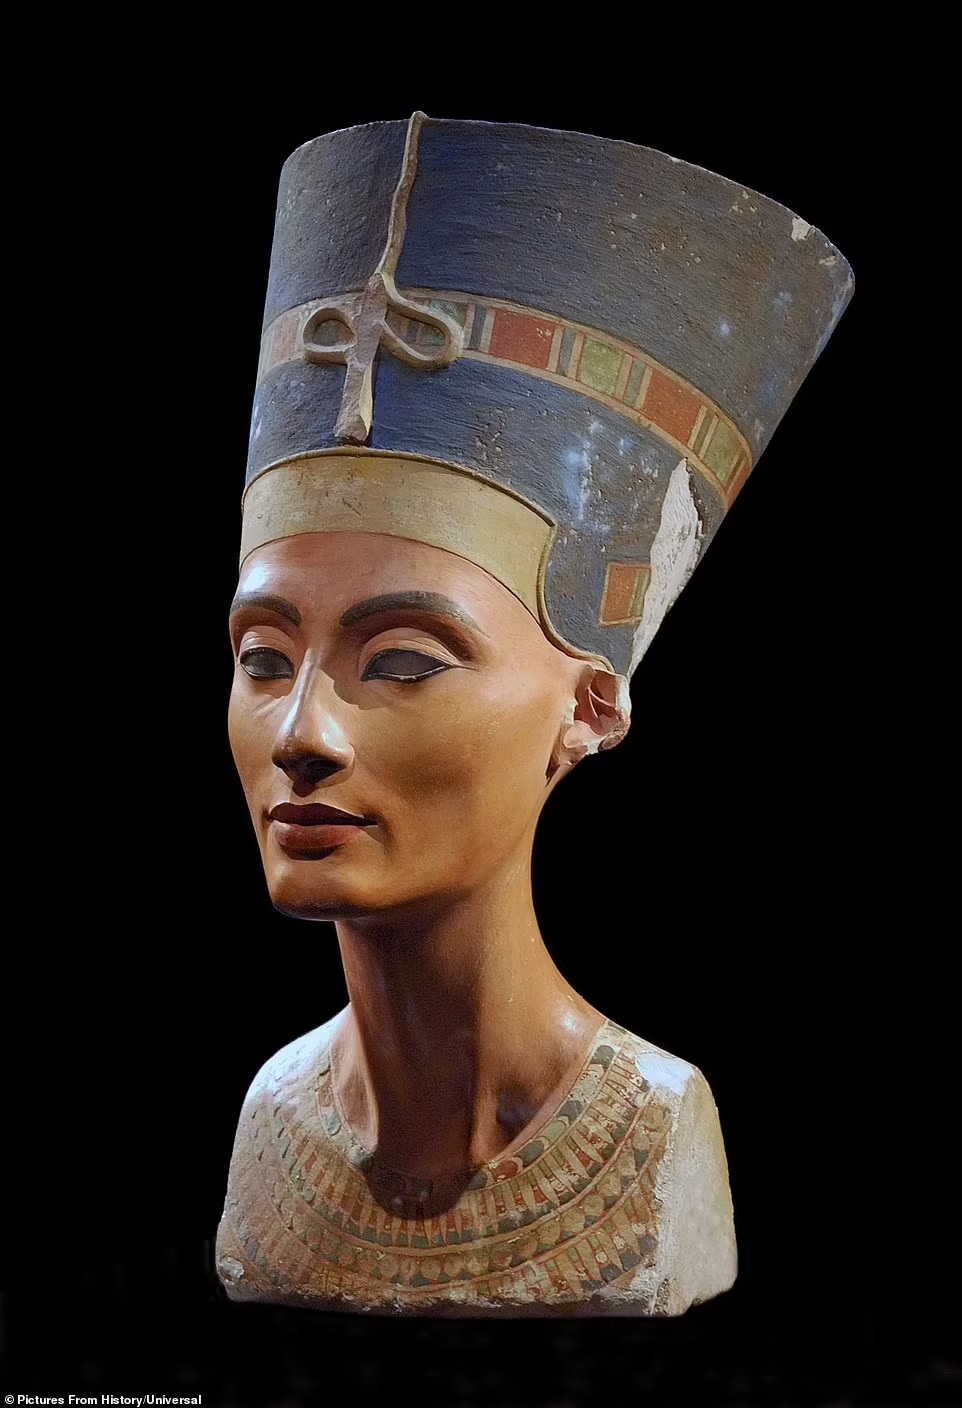 Từ Nefertiti đến Alexander Đại đế - Những ngôi mộ cổ hiện vẫn là bí ẩn (Phần 1) - Ảnh 5.